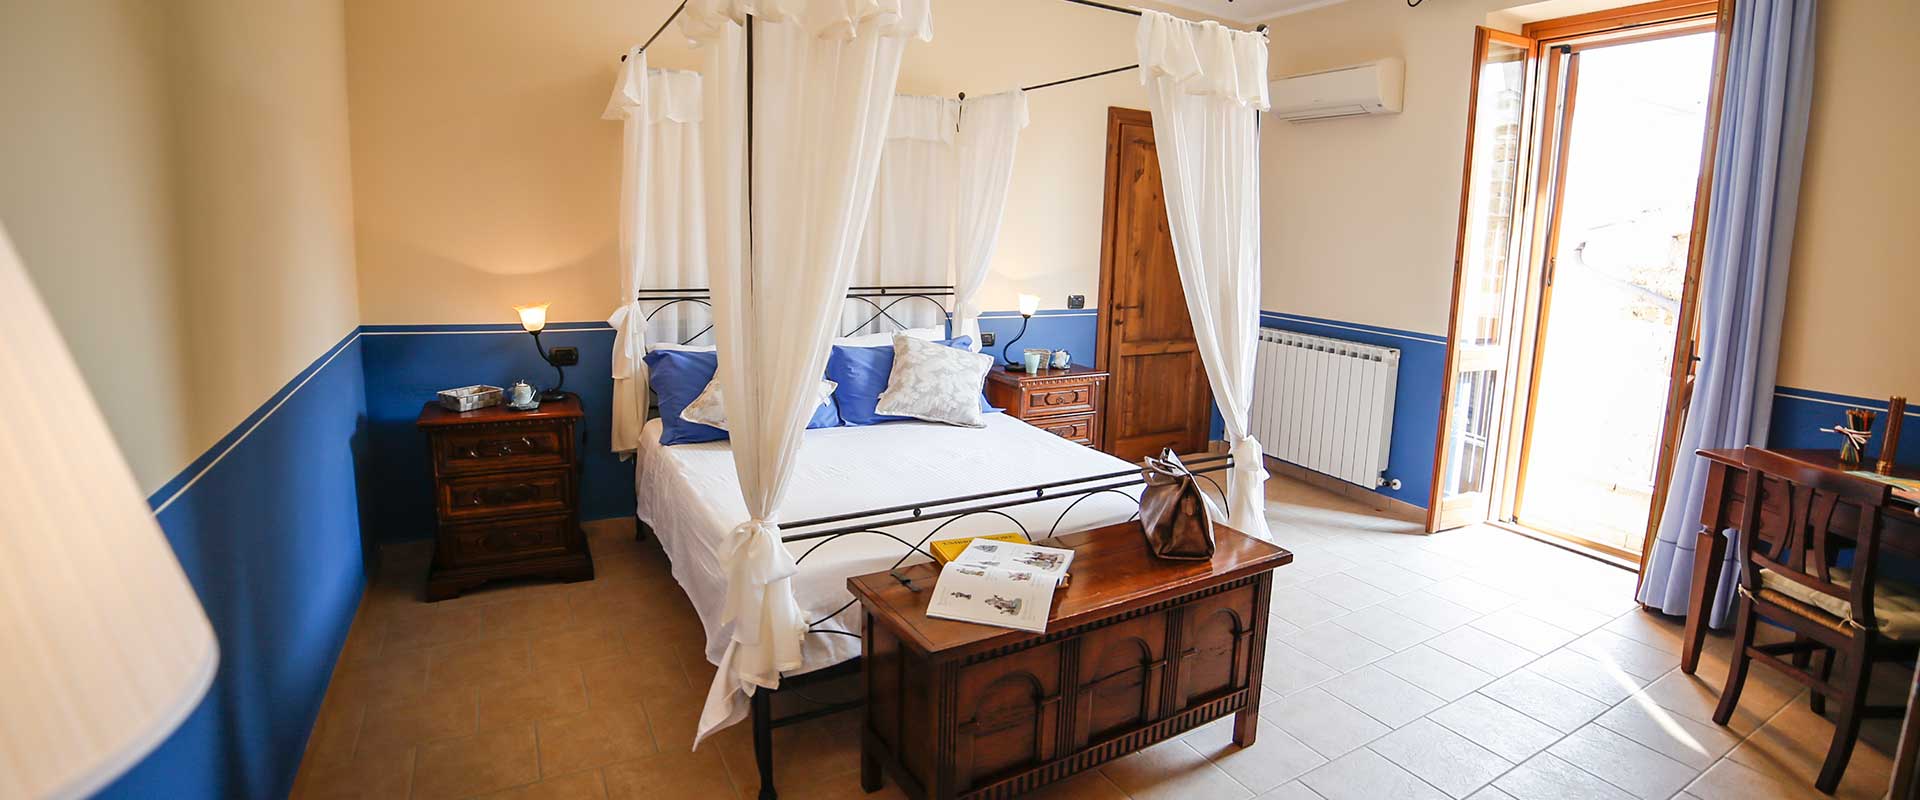 Clio è un bilocale per vacanze con balcone per un massimo di 5 persone. Le Muse casa vacanze a Bevagna, Umbria, Italia